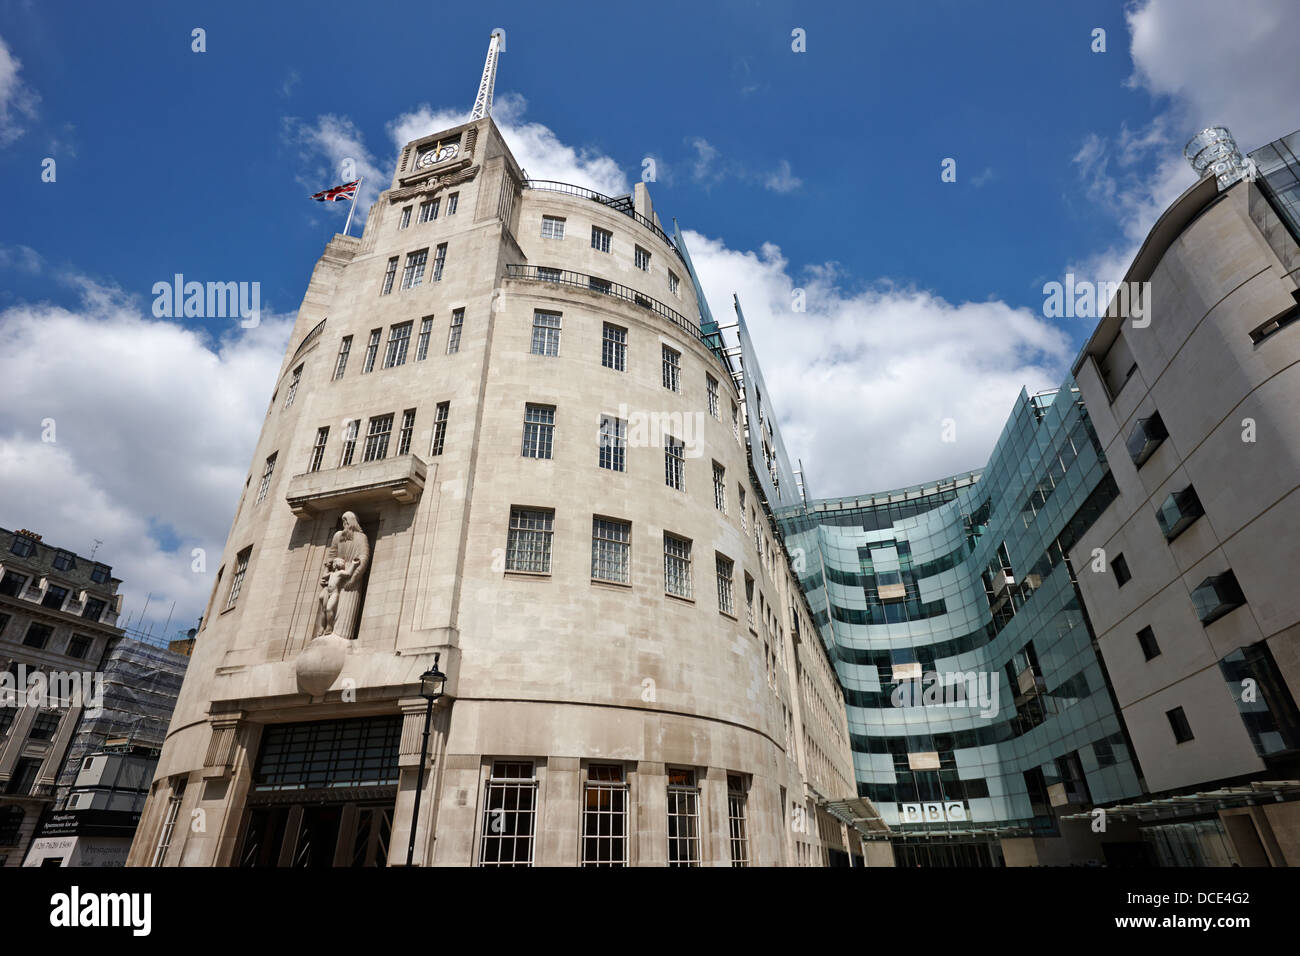 bbc broadcasting house London England UK Stock Photo